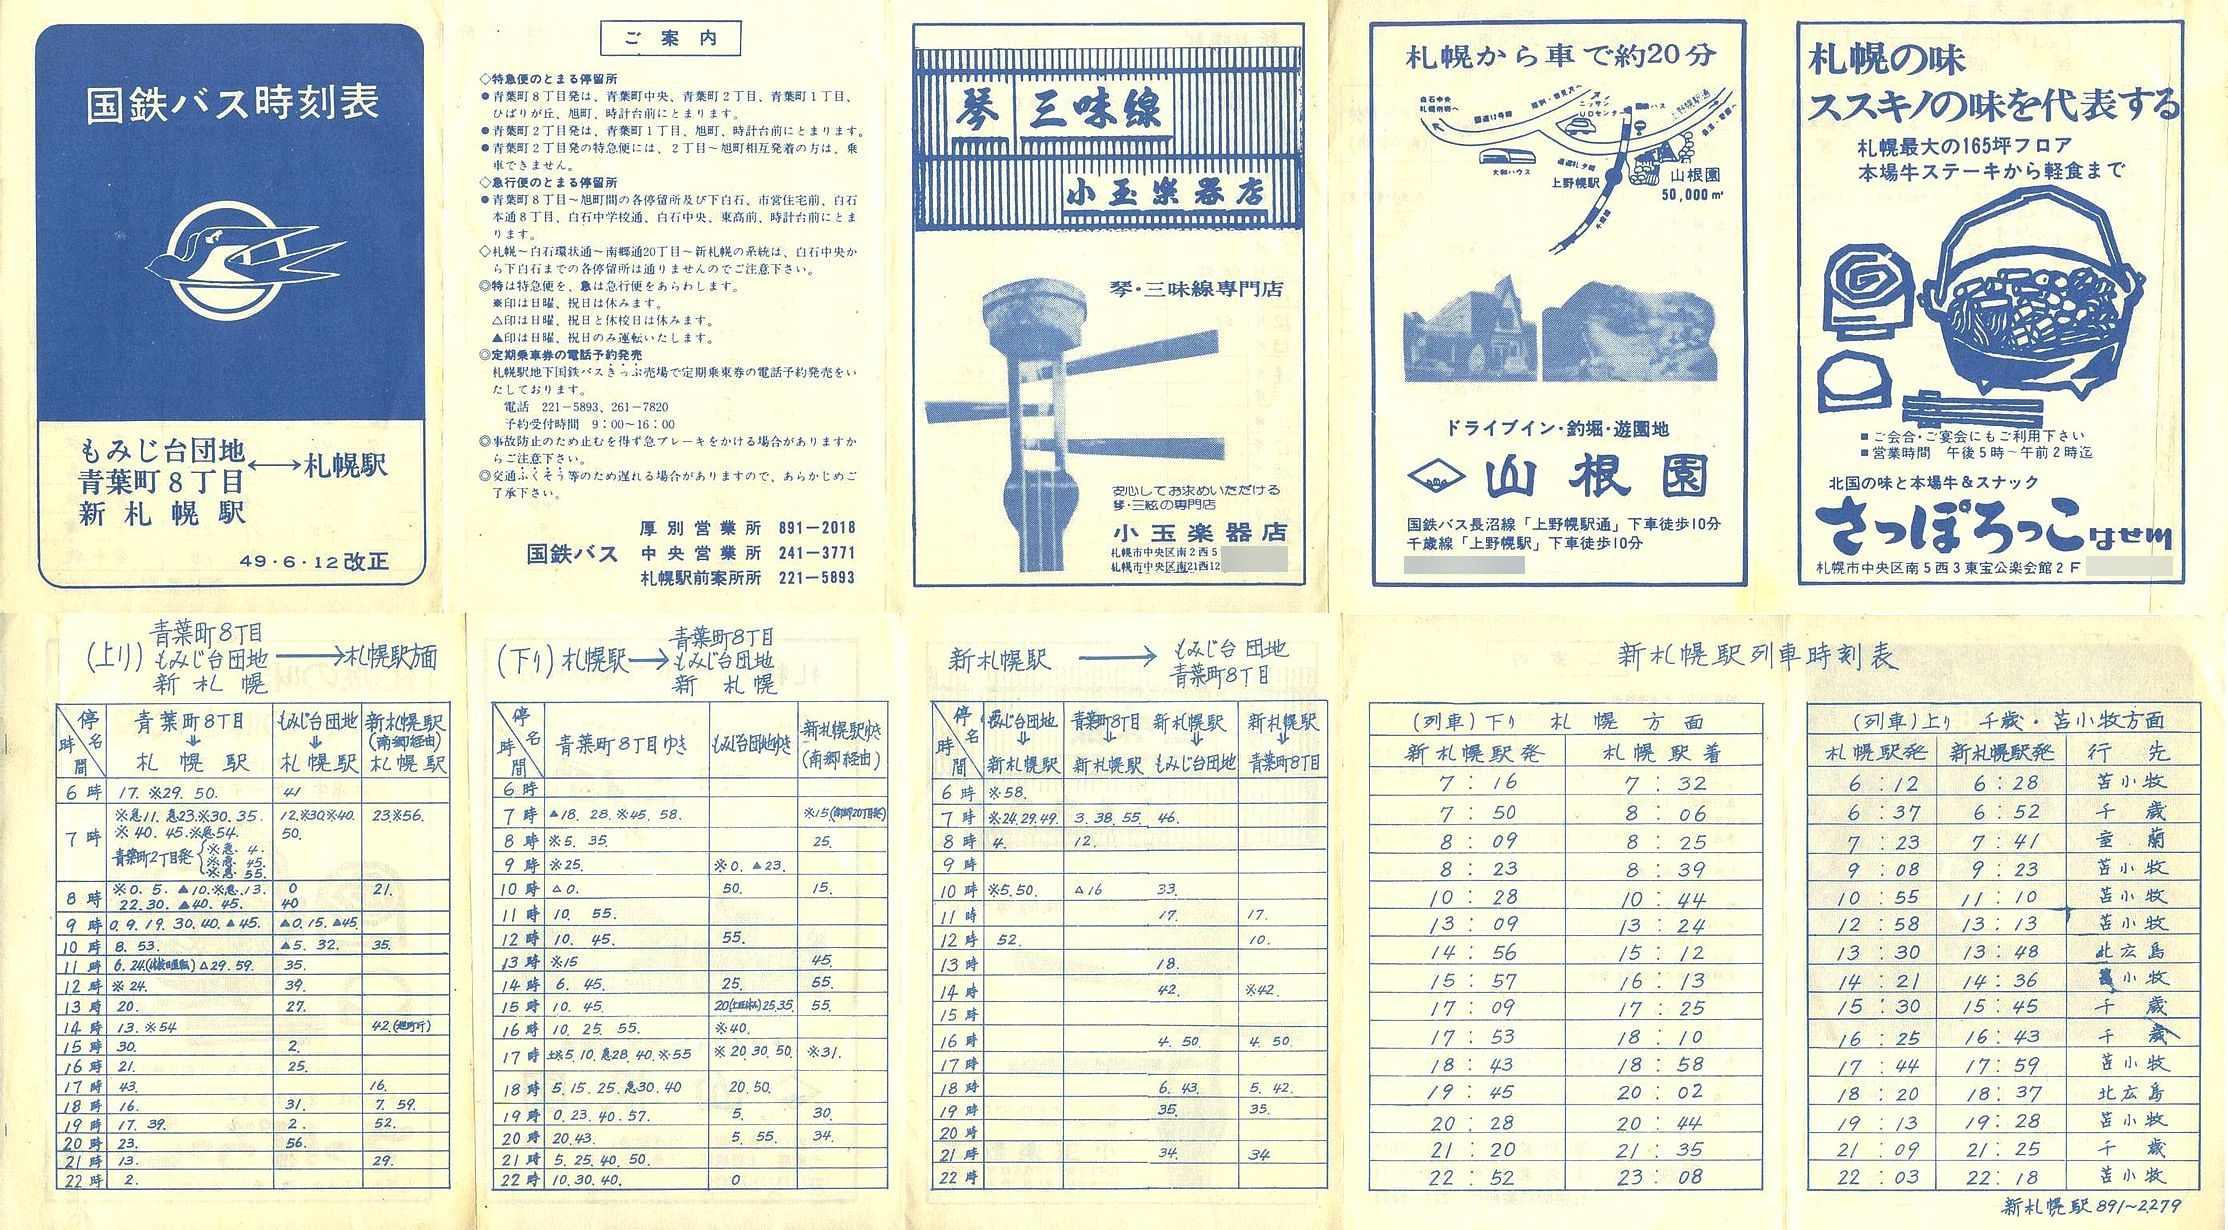 1974-06-12改正_国鉄バス_空知線もみじ台方向時刻表